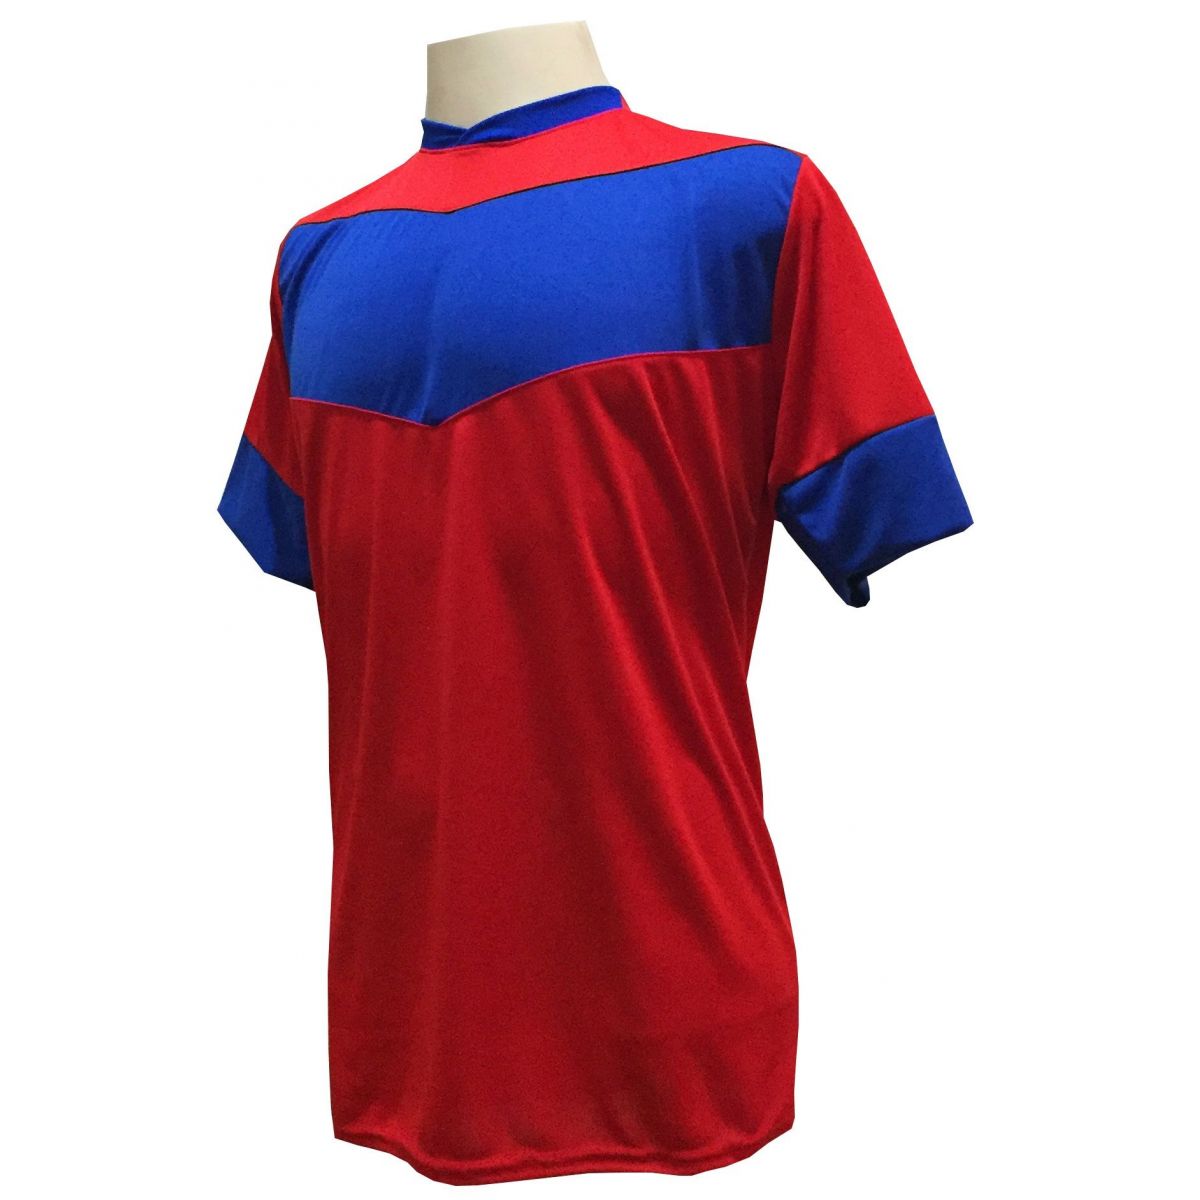 Uniforme Esportivo com 18 camisas modelo Columbus Vermelho/Royal + 18 calções modelo Madrid + 1 Goleiro + Brindes